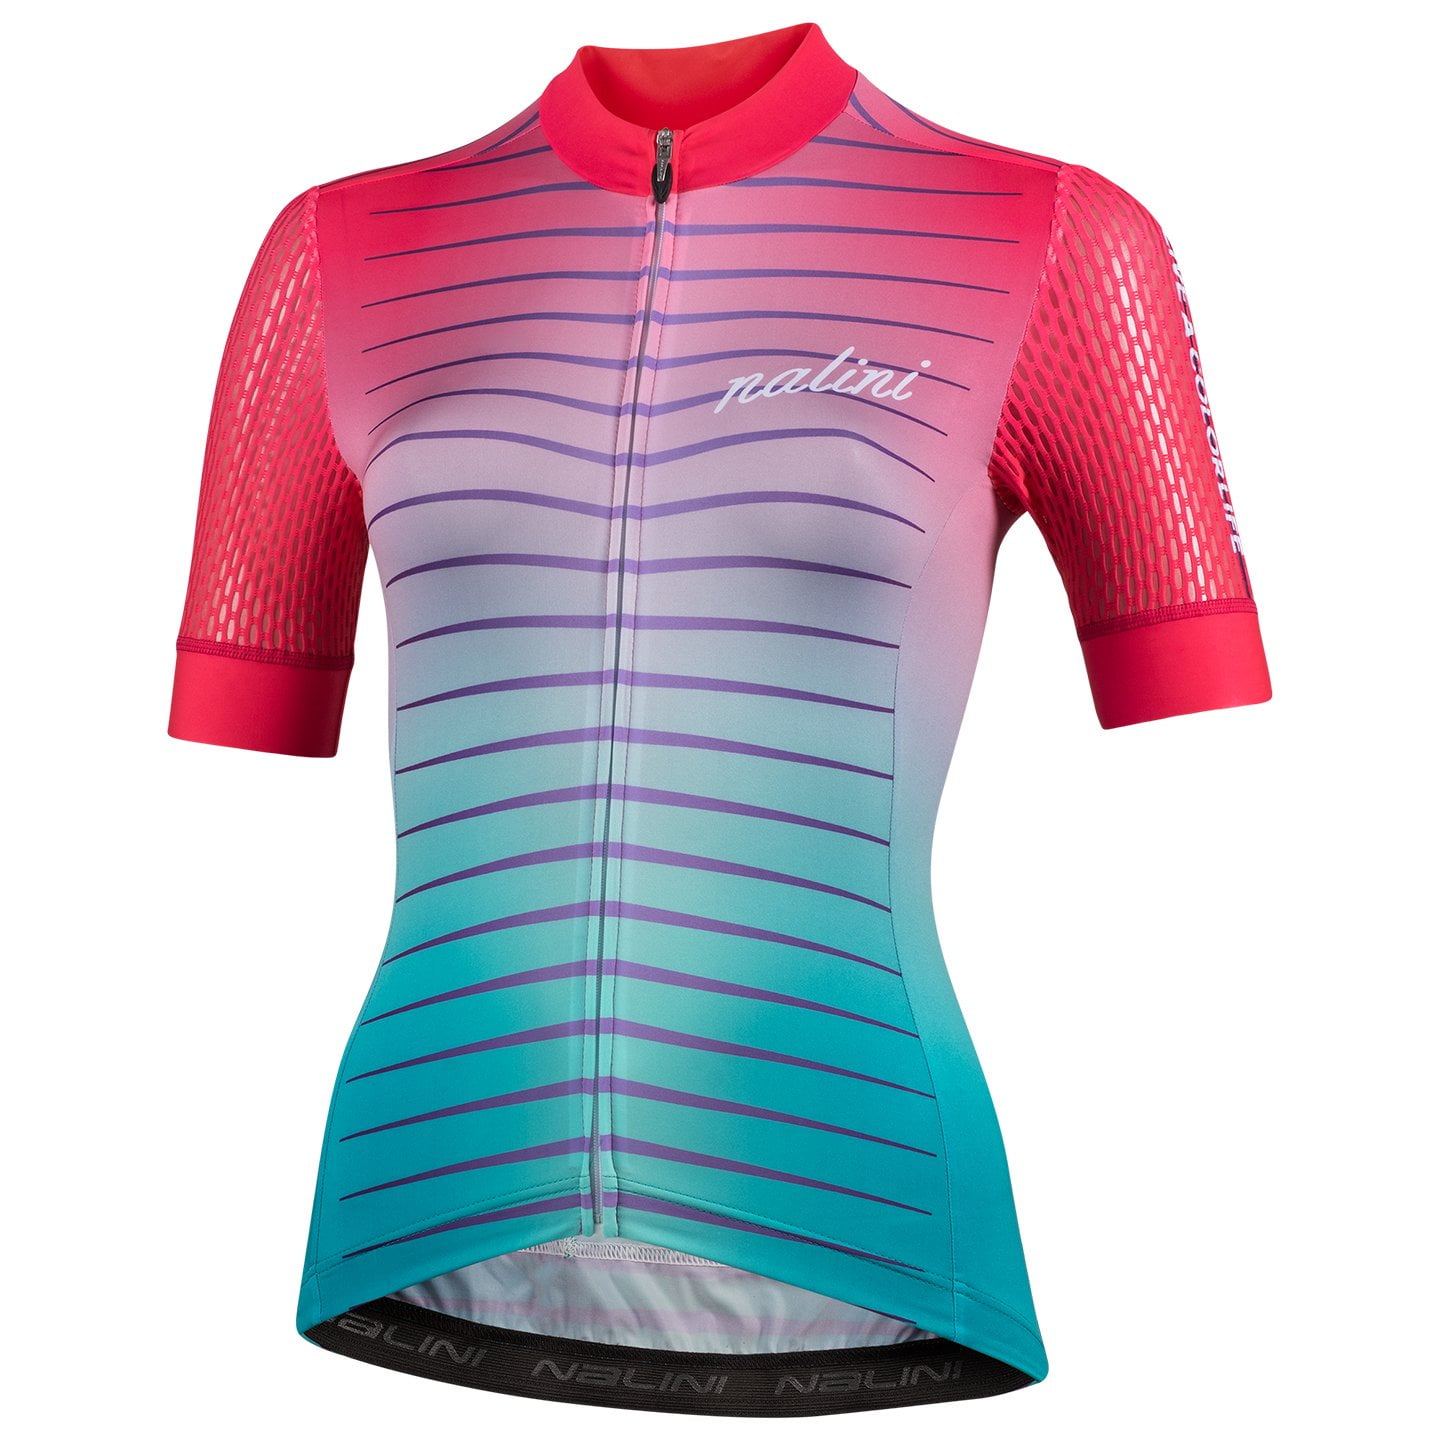 NALINI Las Vegas Women’s Jersey Women’s Short Sleeve Jersey, size XL, Cycle jersey, Bike gear